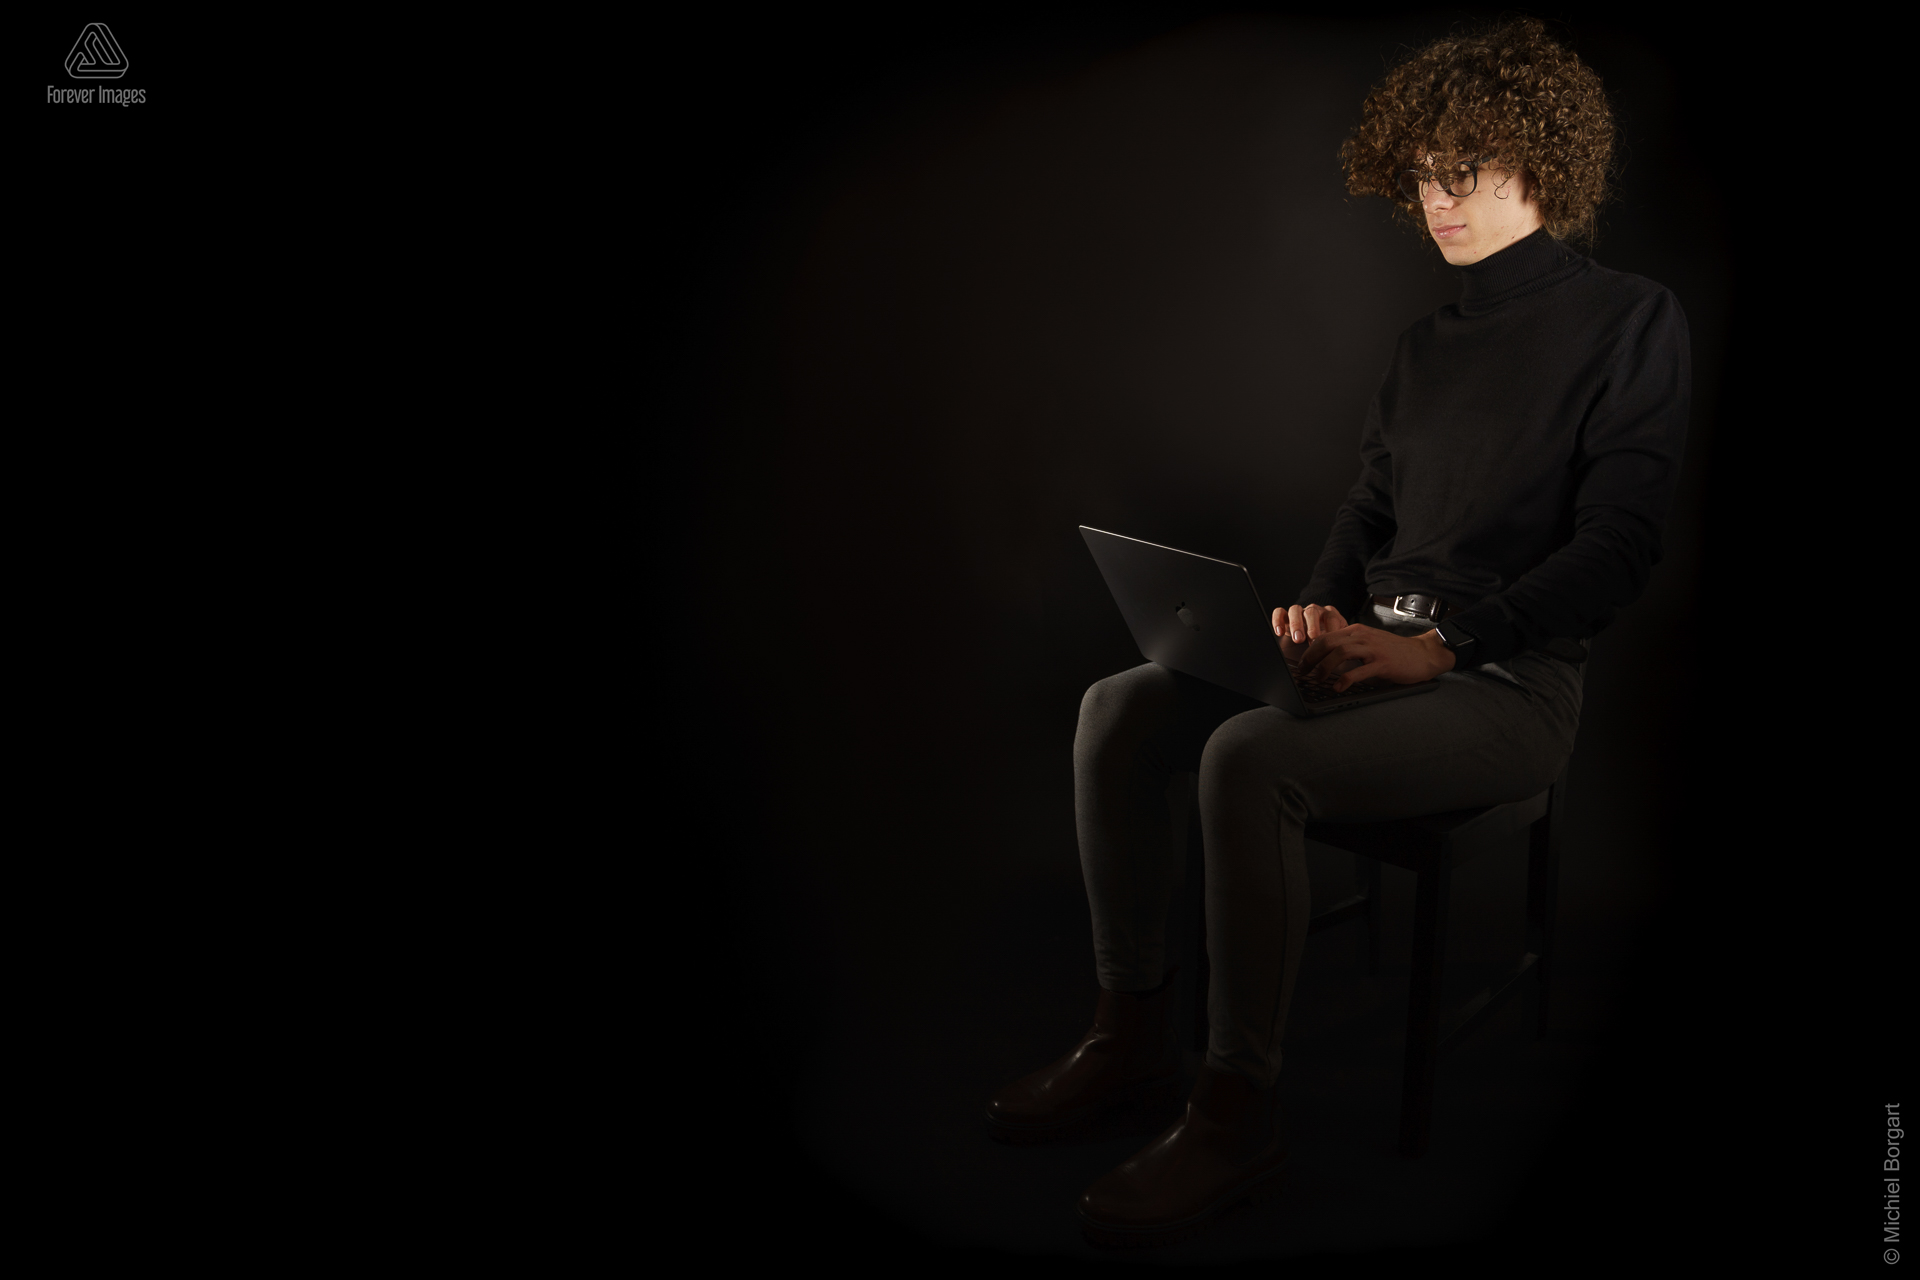 Portretfoto jonge man met zwarte coltrui lange krullende haren met laptop | Andreas | Portretfotograaf Michiel Borgart - Forever Images.